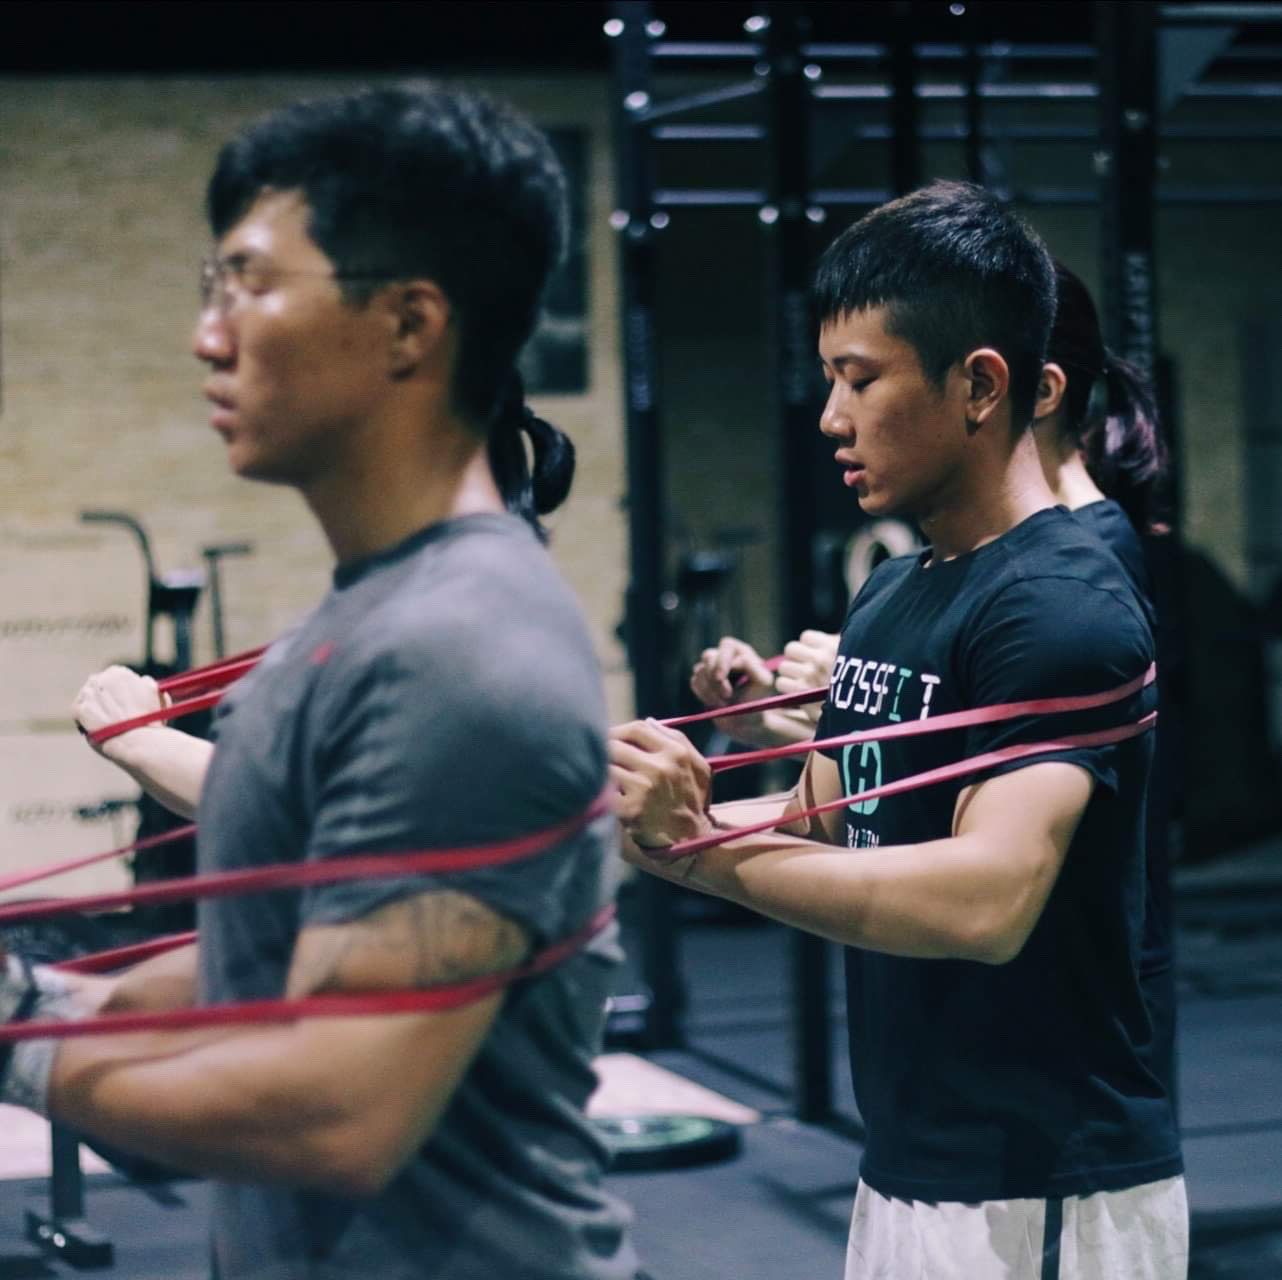 台南 CrossFit - 舉重、體操、肌力 - Raymond